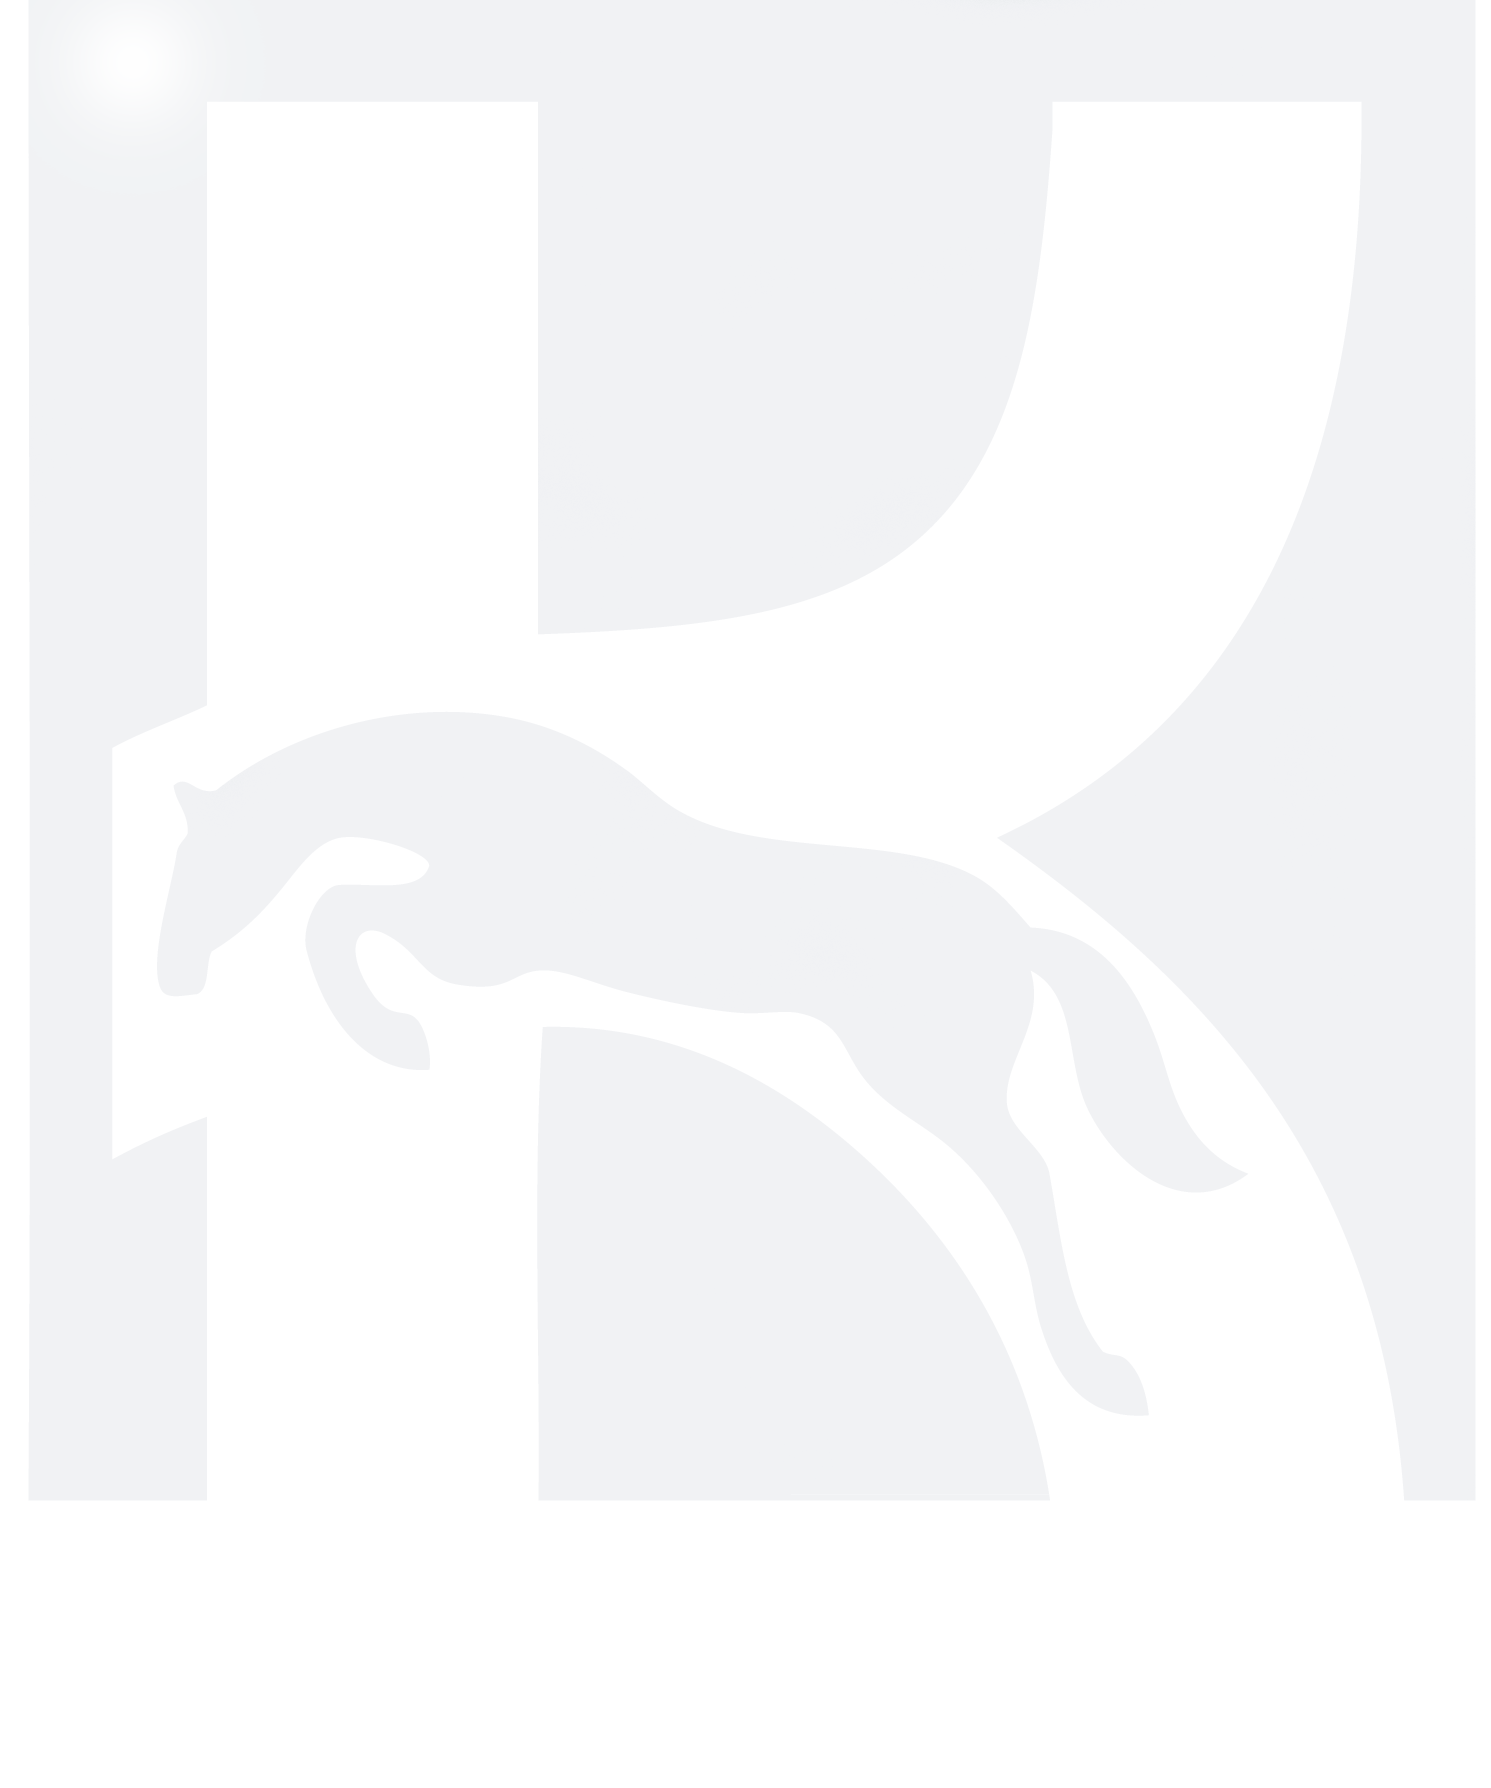 Kilkern Farm